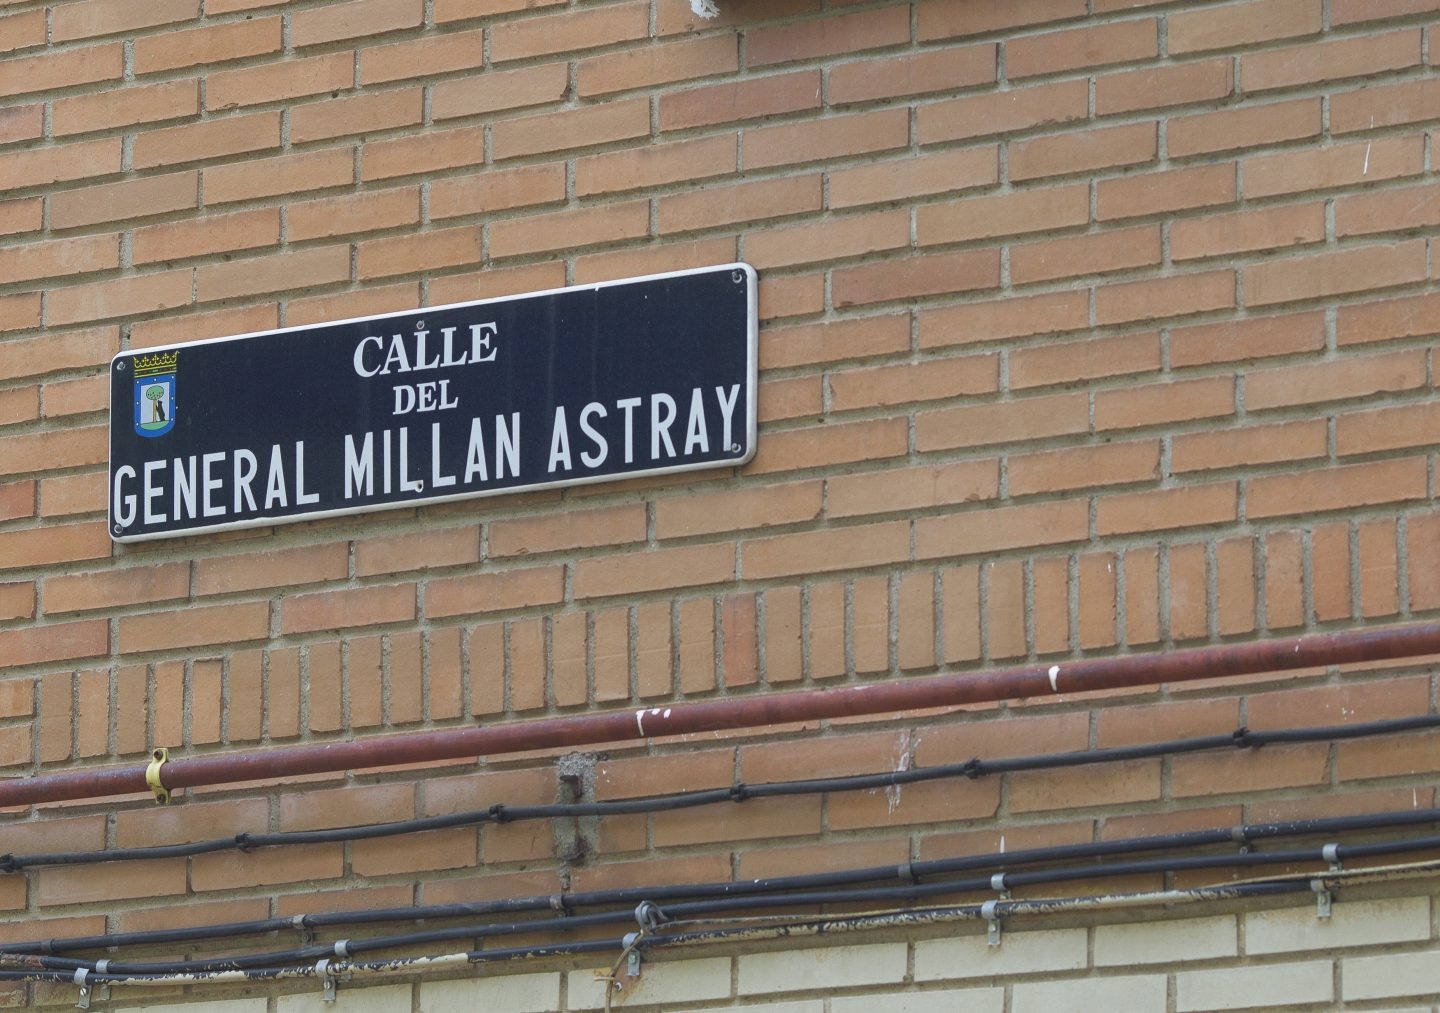 Calle con denominación vinculada al franquismo en Madrid.